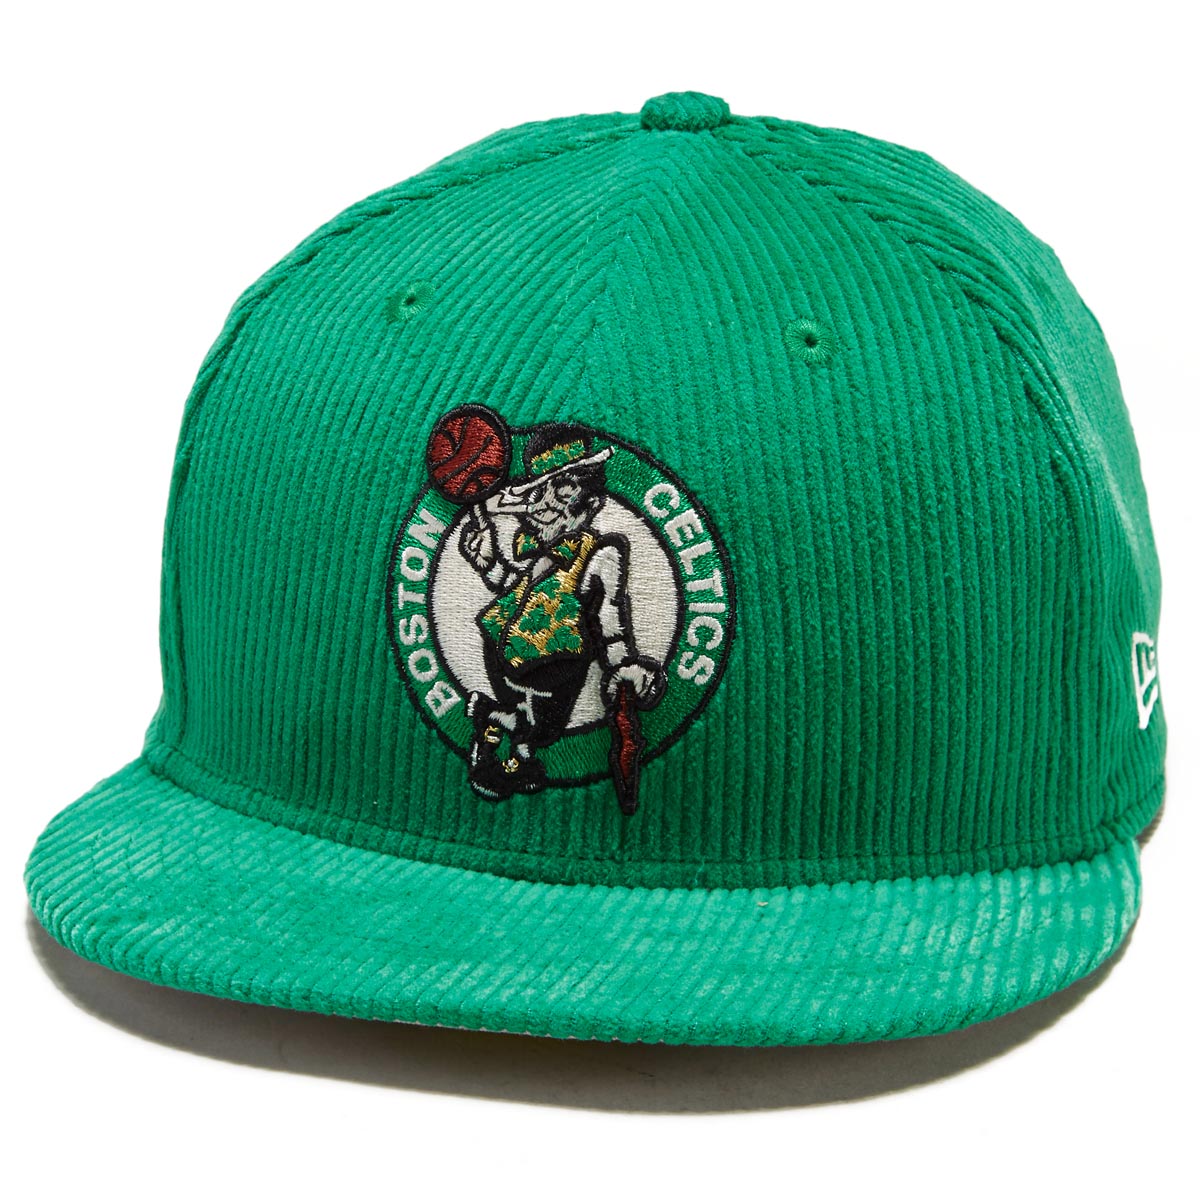 New Era 5950 Letterman Pin Hat - Boston Celtics image 1